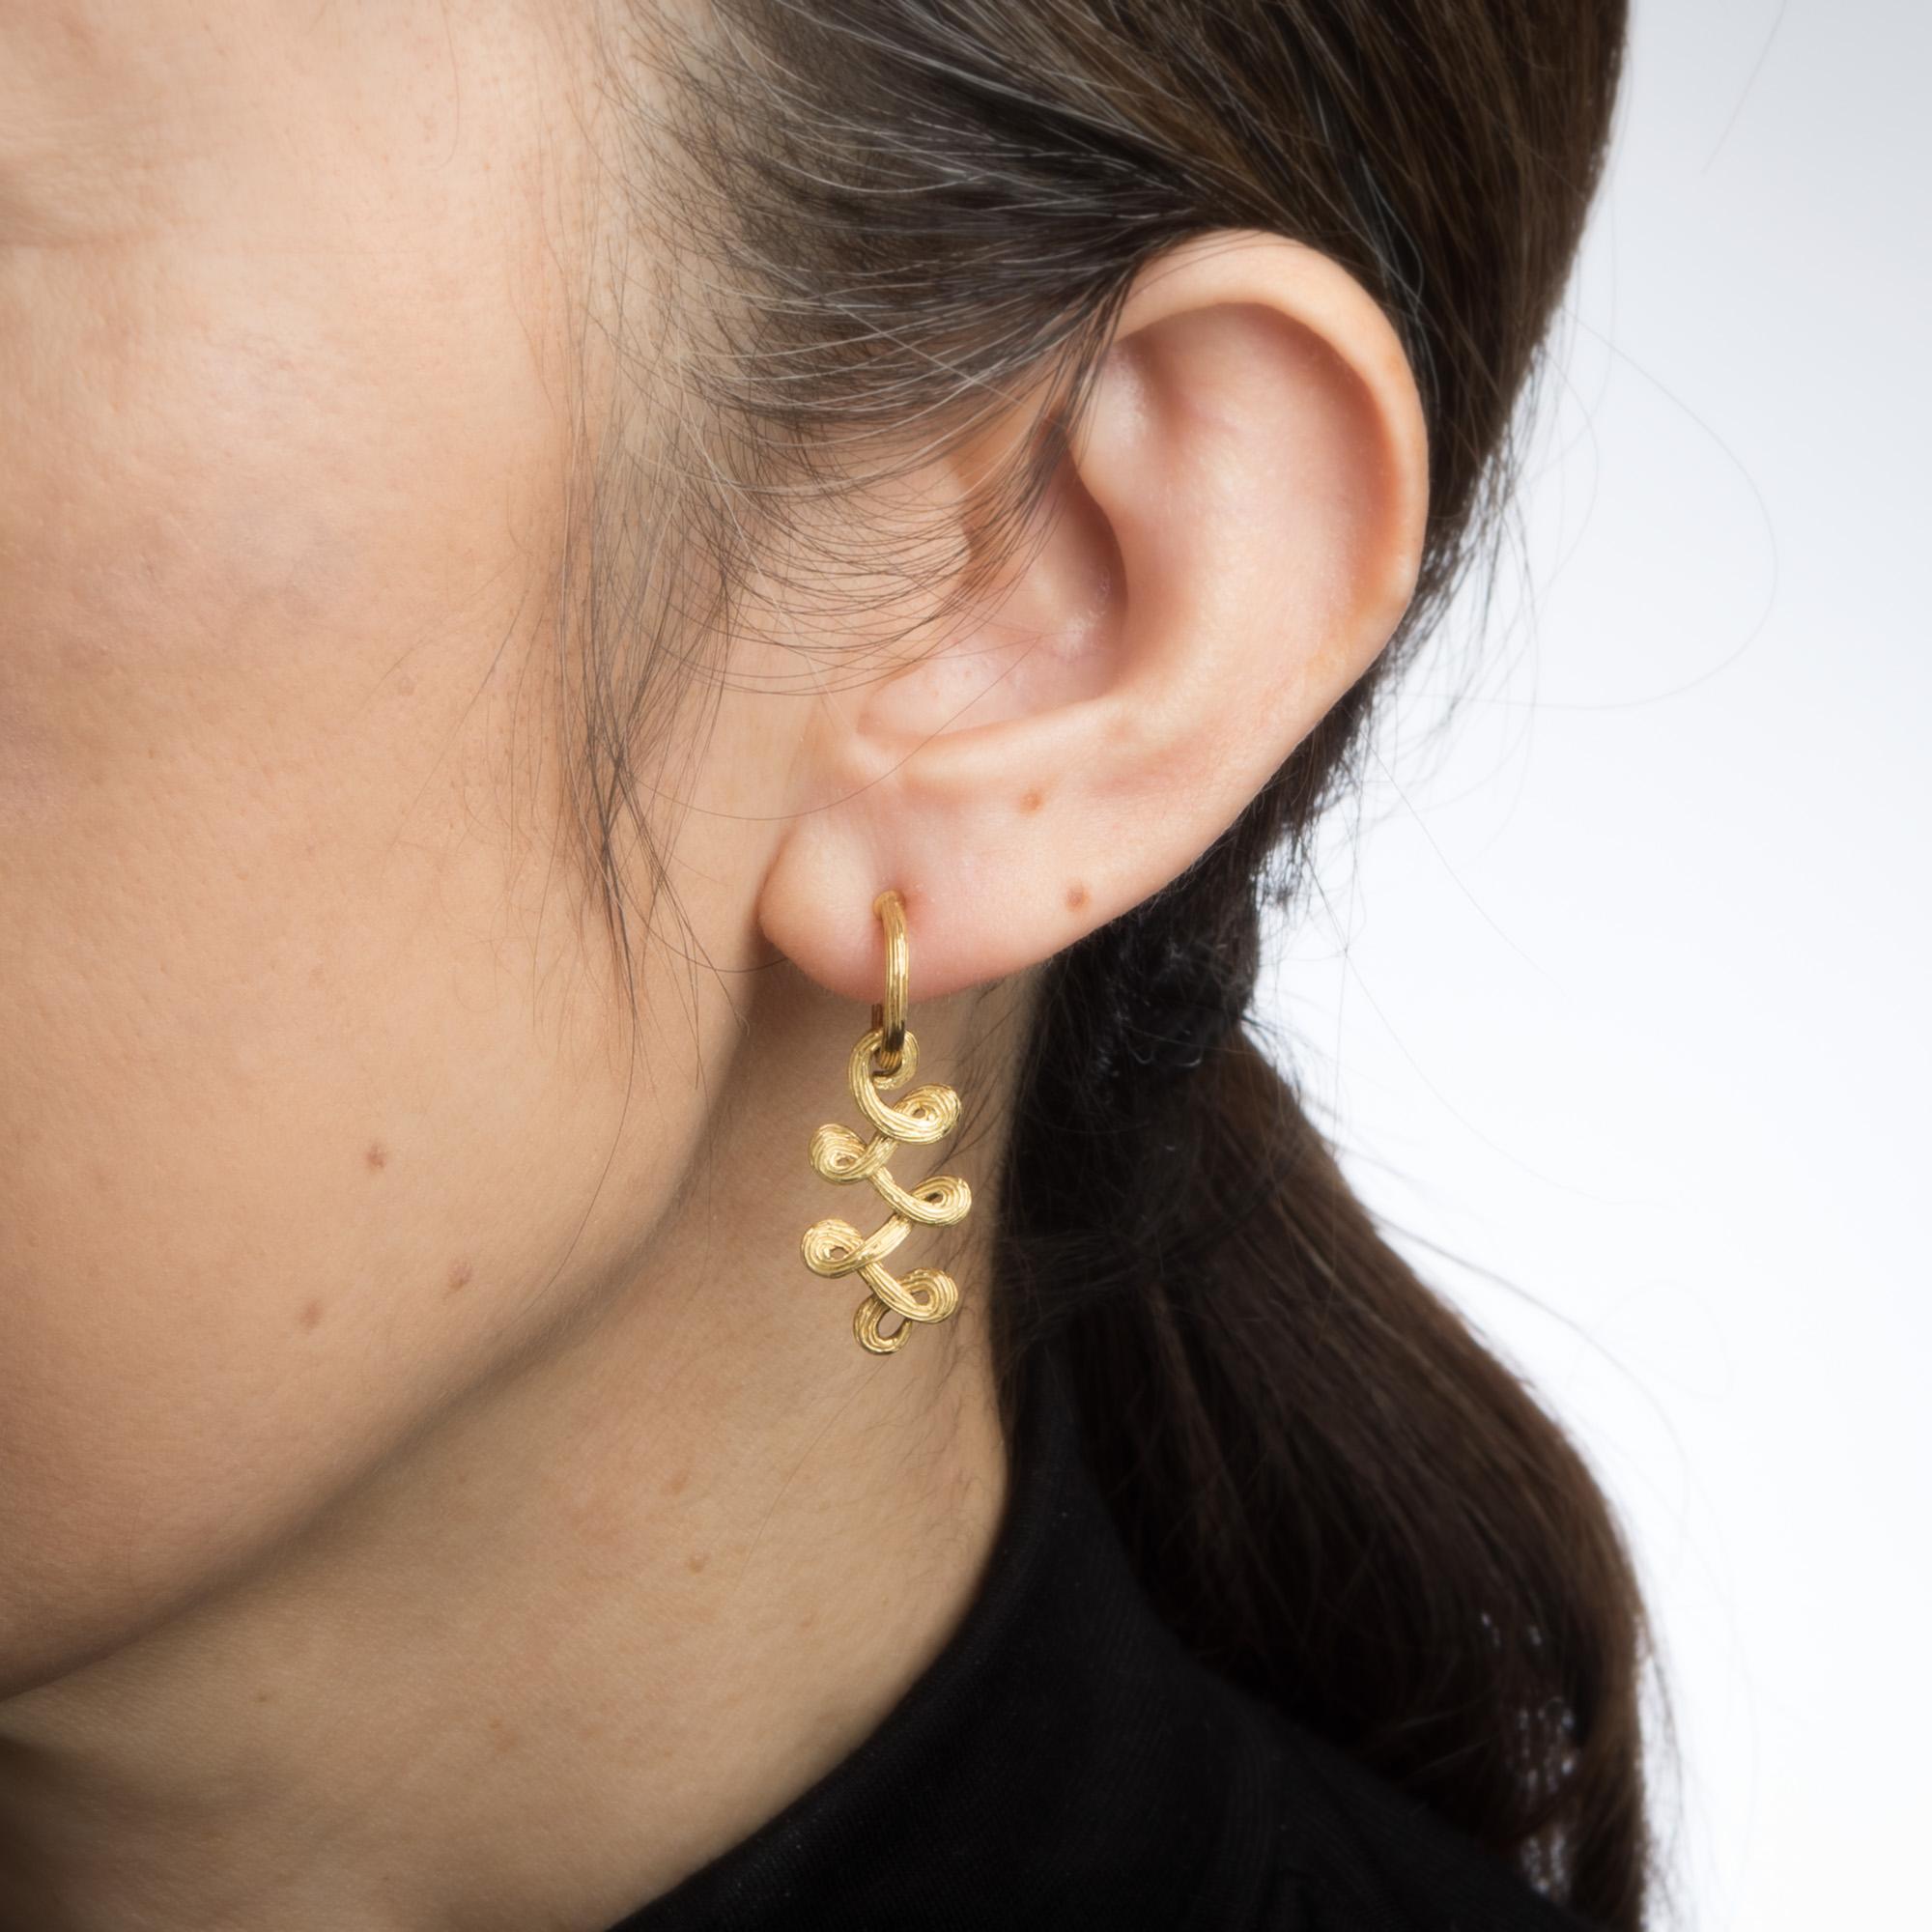 Modern H Stern Earrings 18 Karat Gold Swirl Ribbon Design Estate Fine Signed Jewelry